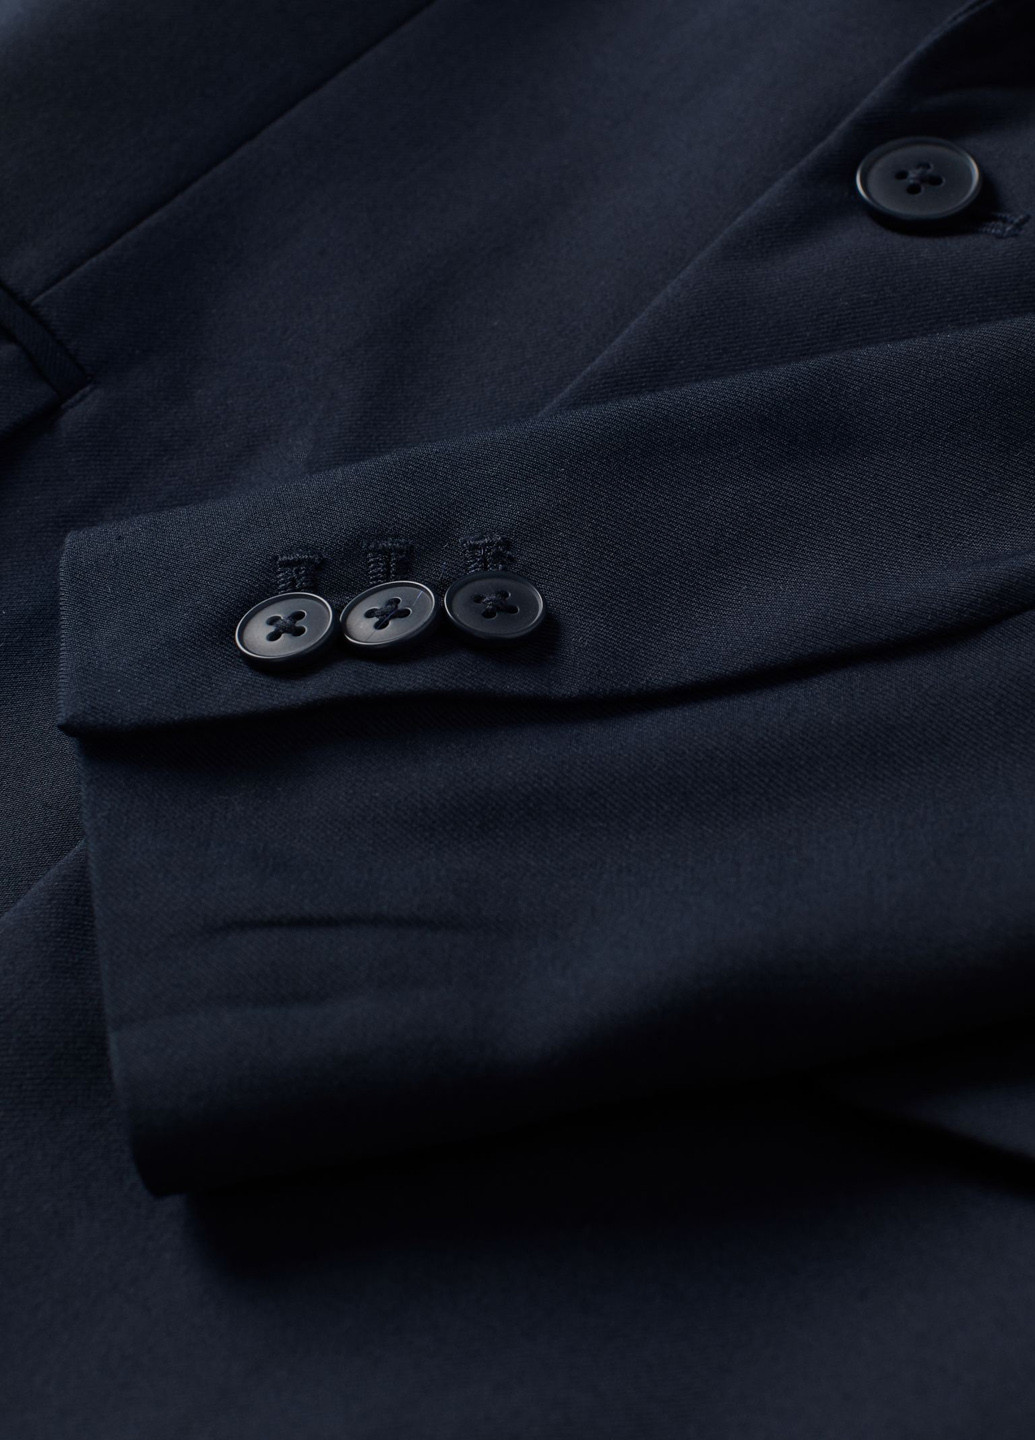 Піджак H&M однотонний темно-синій діловий поліестер